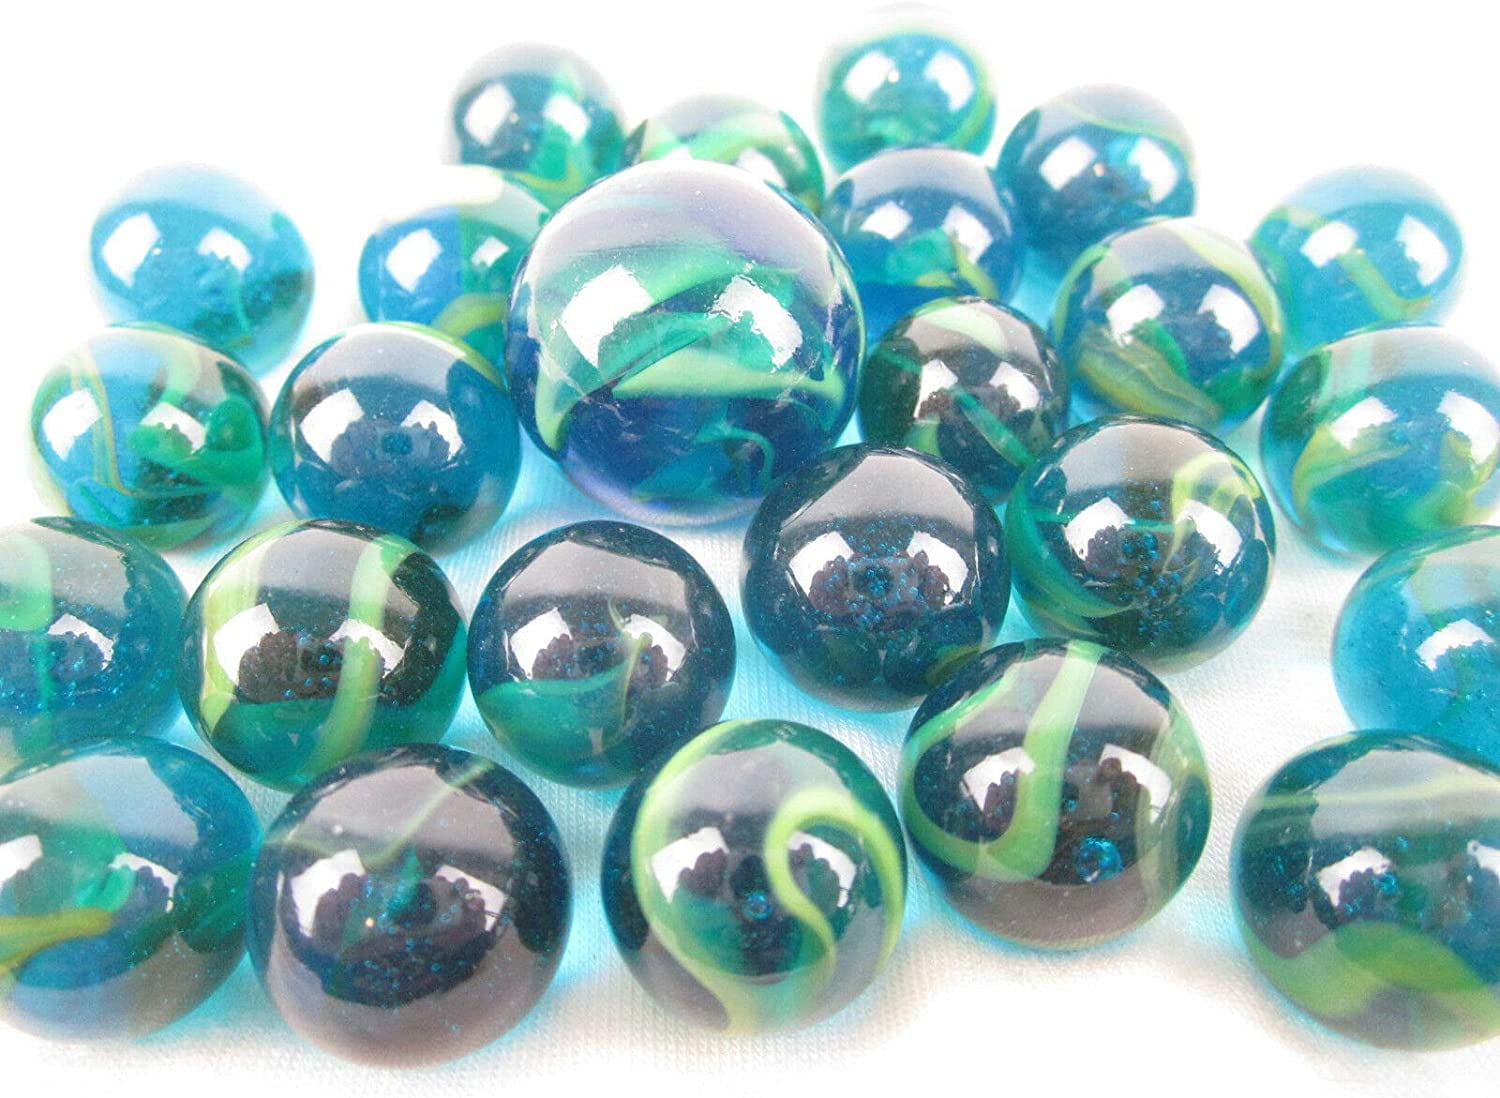 Hot Shots Assorted Metallic Marbles Shooter Ball Fun Games Glass Kids Play Net 